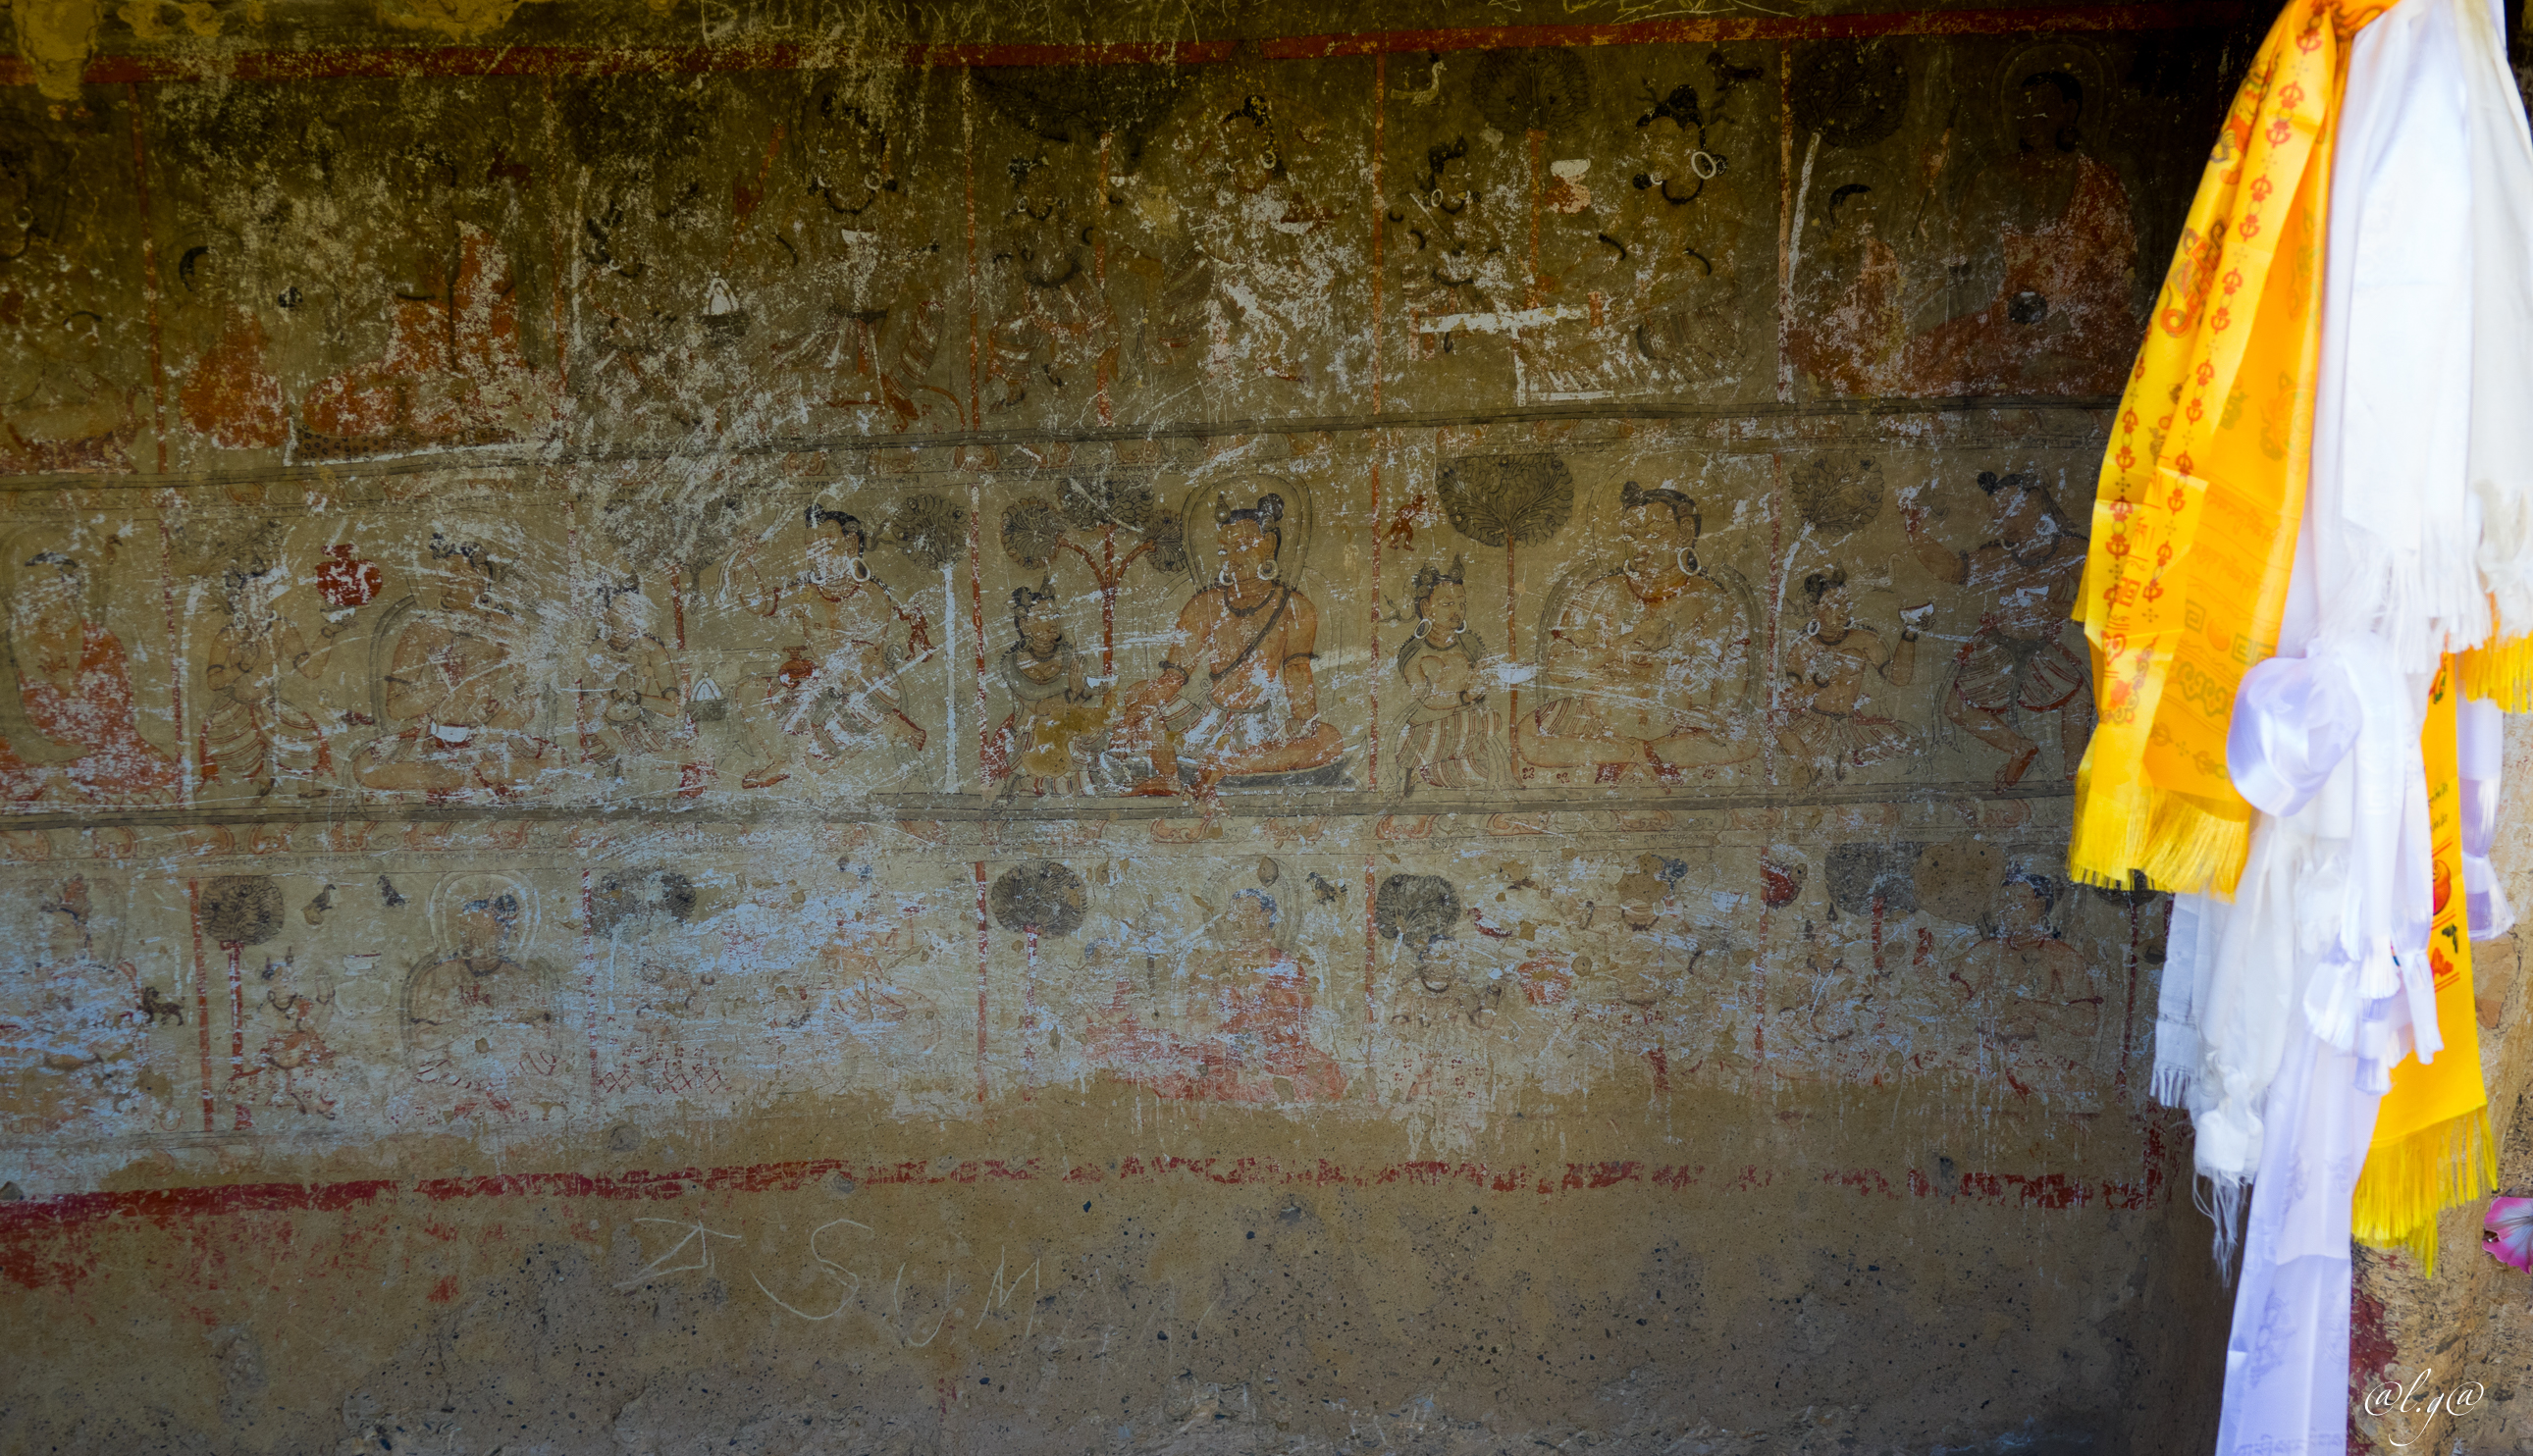 La grotte de Könchok Ling : Représentations bouddhistes de style Pala datant du 12° siècle. Les « Grands Accomplis » ou Mahâsiddhas sont des personnages historiques ou légendaires qui pratiquent l'ascèse et les techniques psychophysiologiques du yoga.